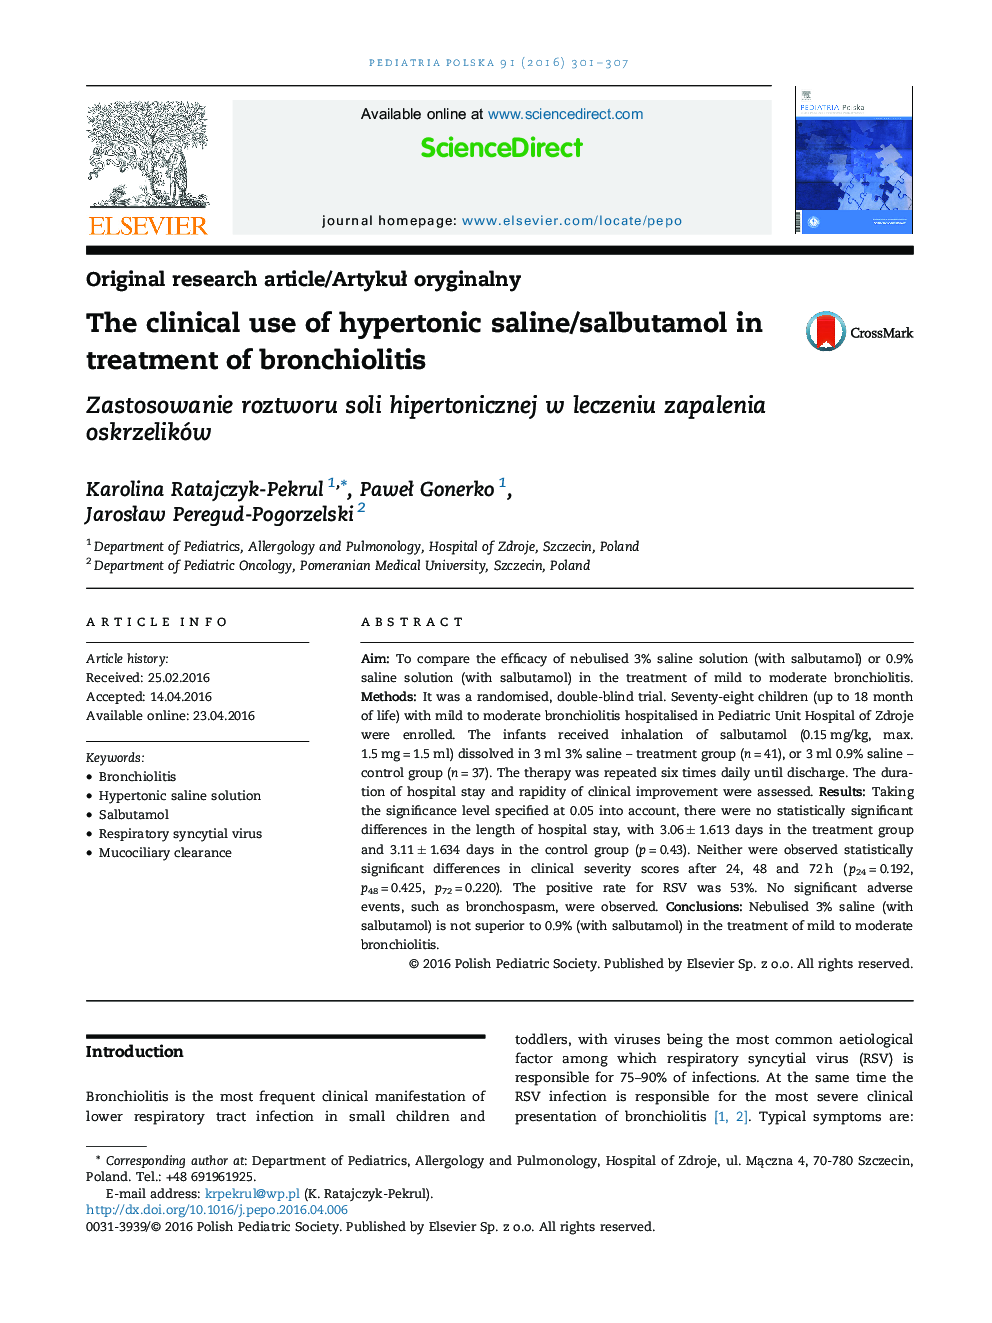 استفاده بالینی از سالین هیپرتونیک/سالبوتامول در درمان برونشیولیت